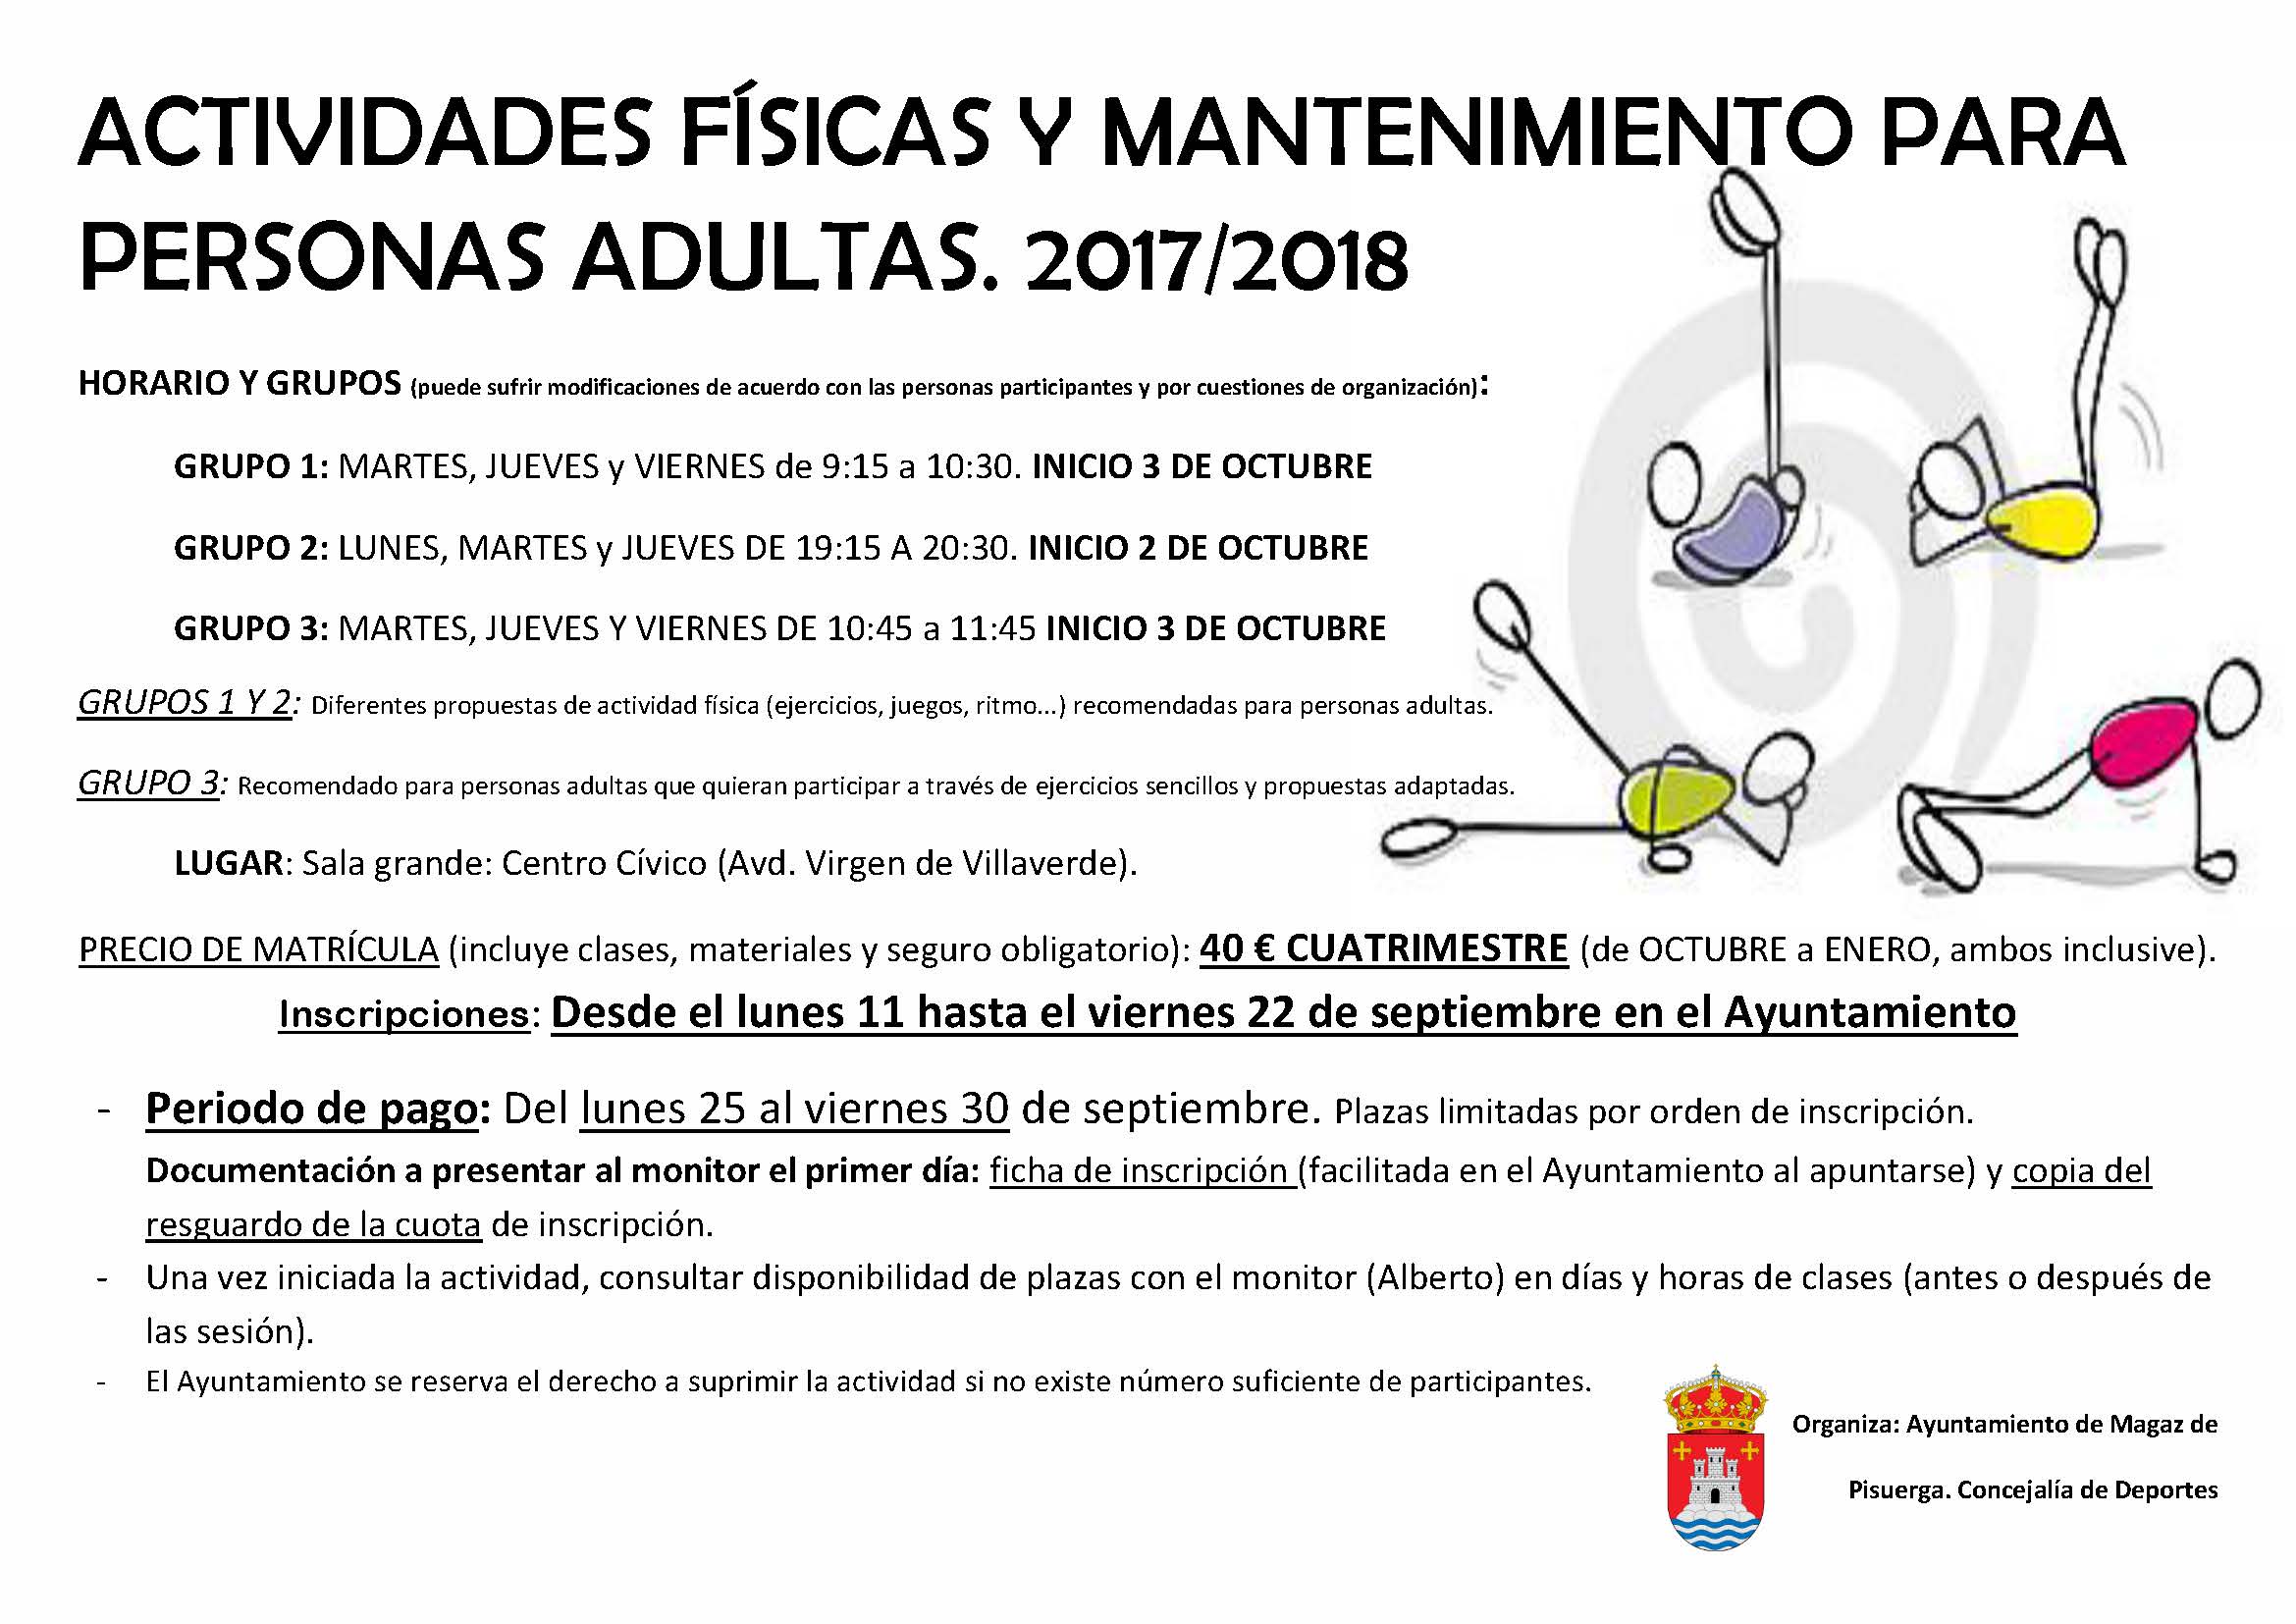 Actividades físicas y mantenimietno para personas adultas 2017/2018